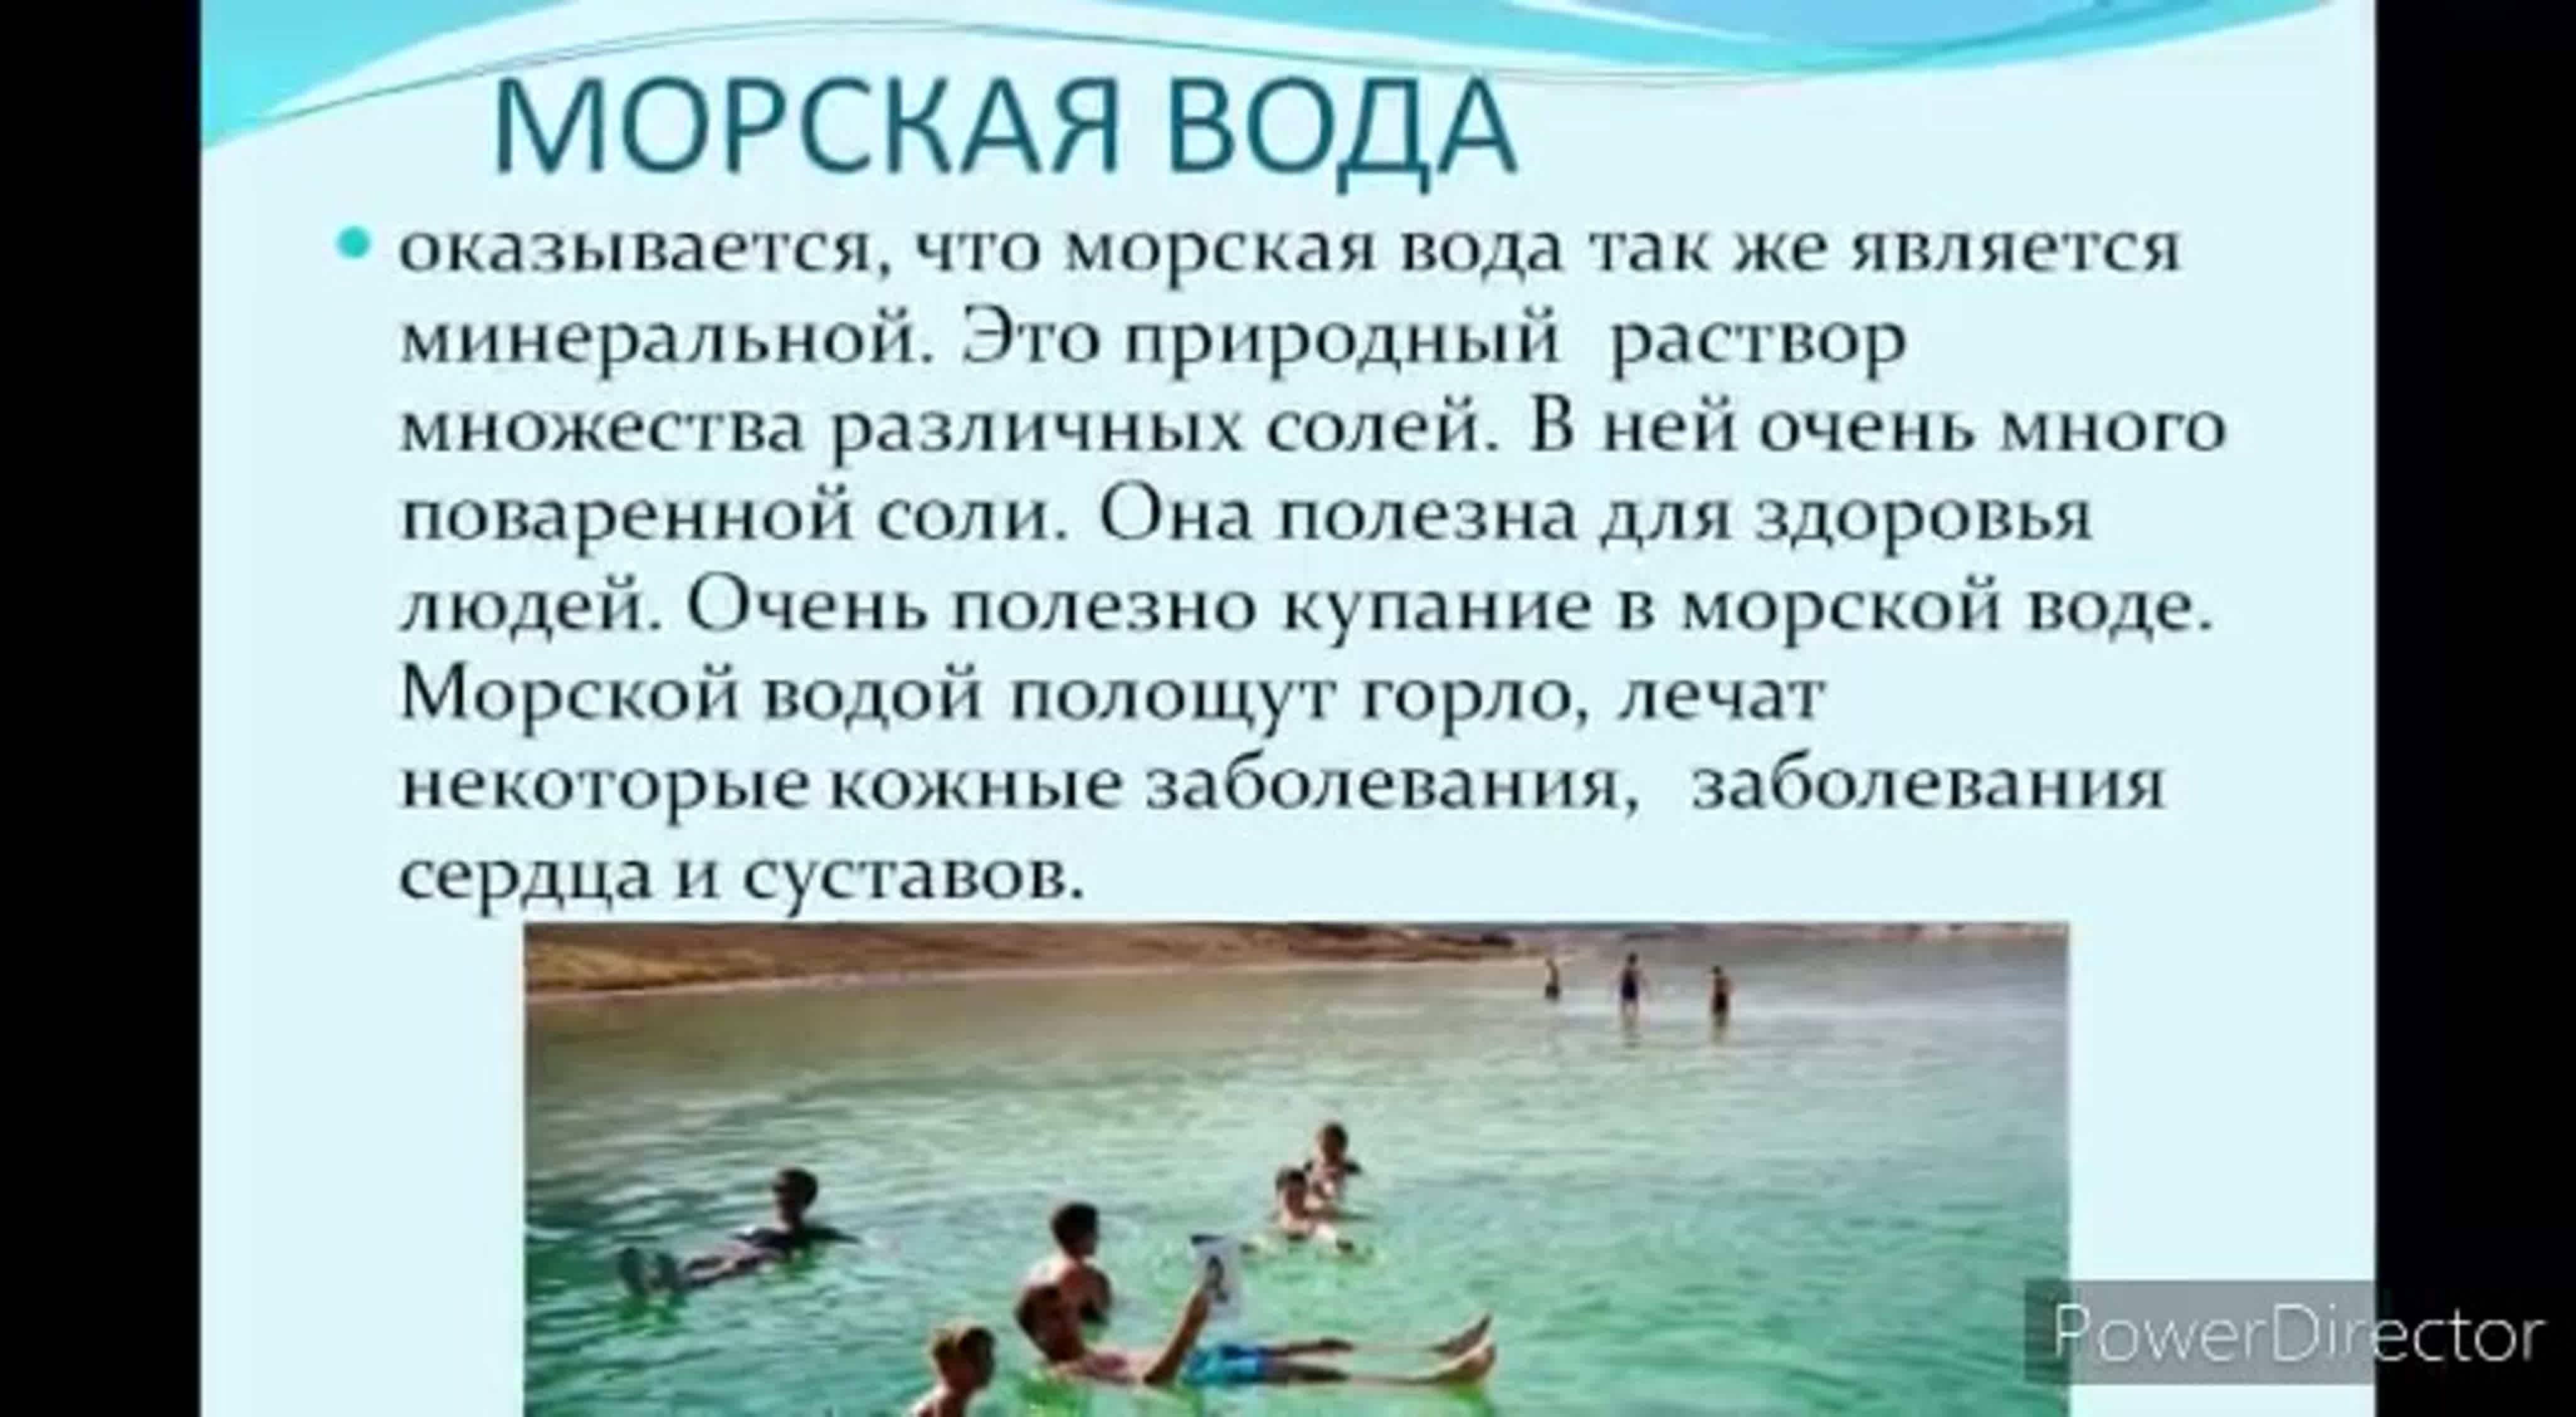 Можно ди купаться. Море полезно для здоровья. Польза моря для здоровья человека. Польза моря для человека. Черное море польза для здоровья.